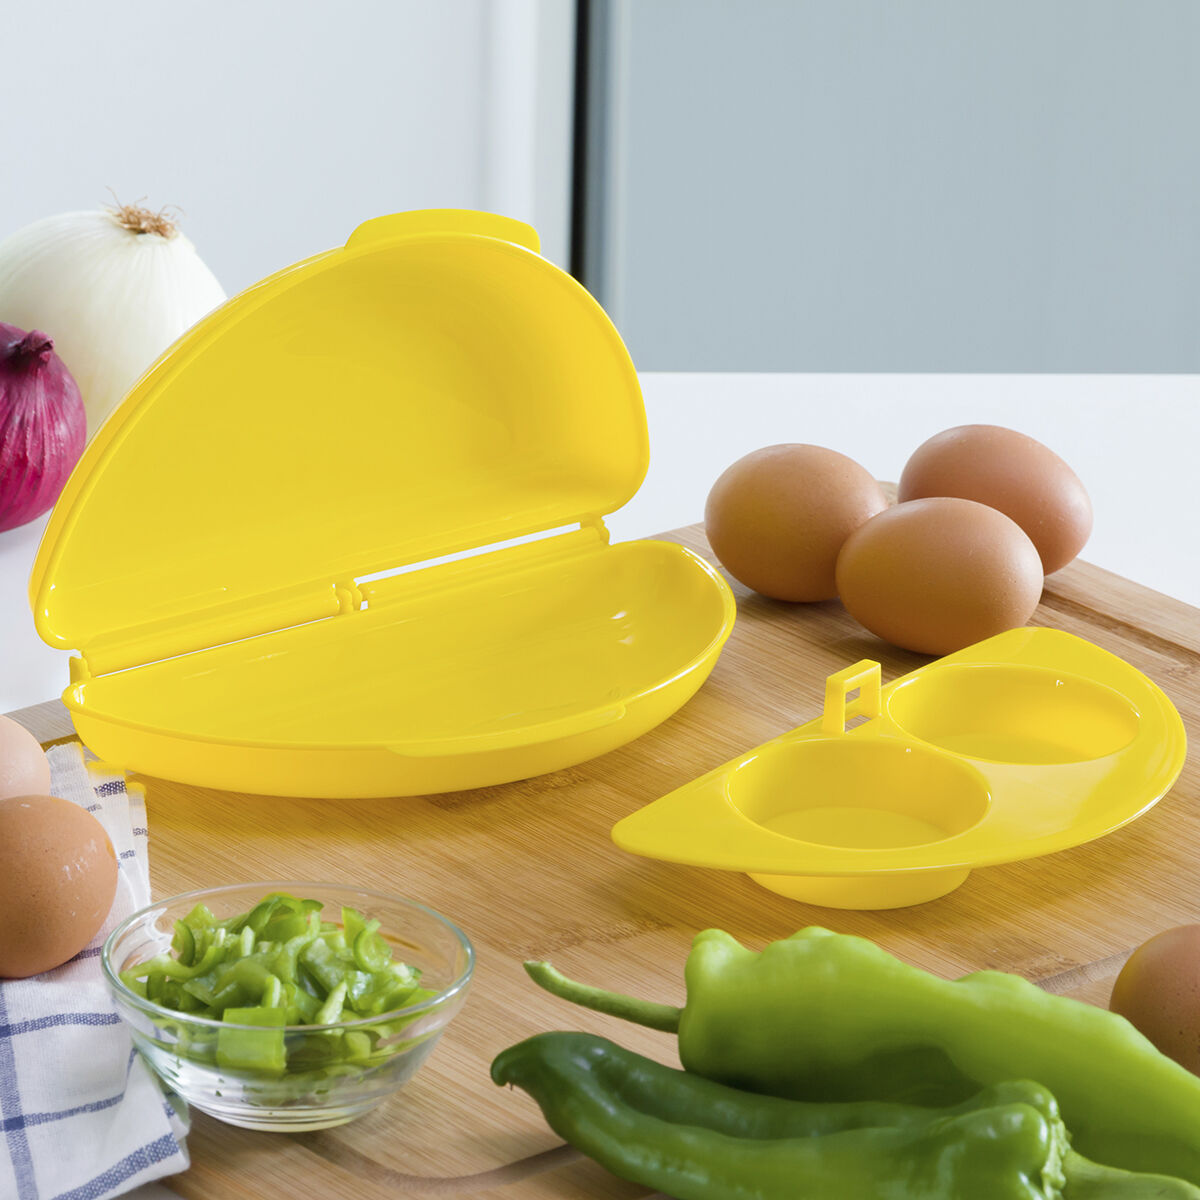 Omelette & egg maker (microwave)